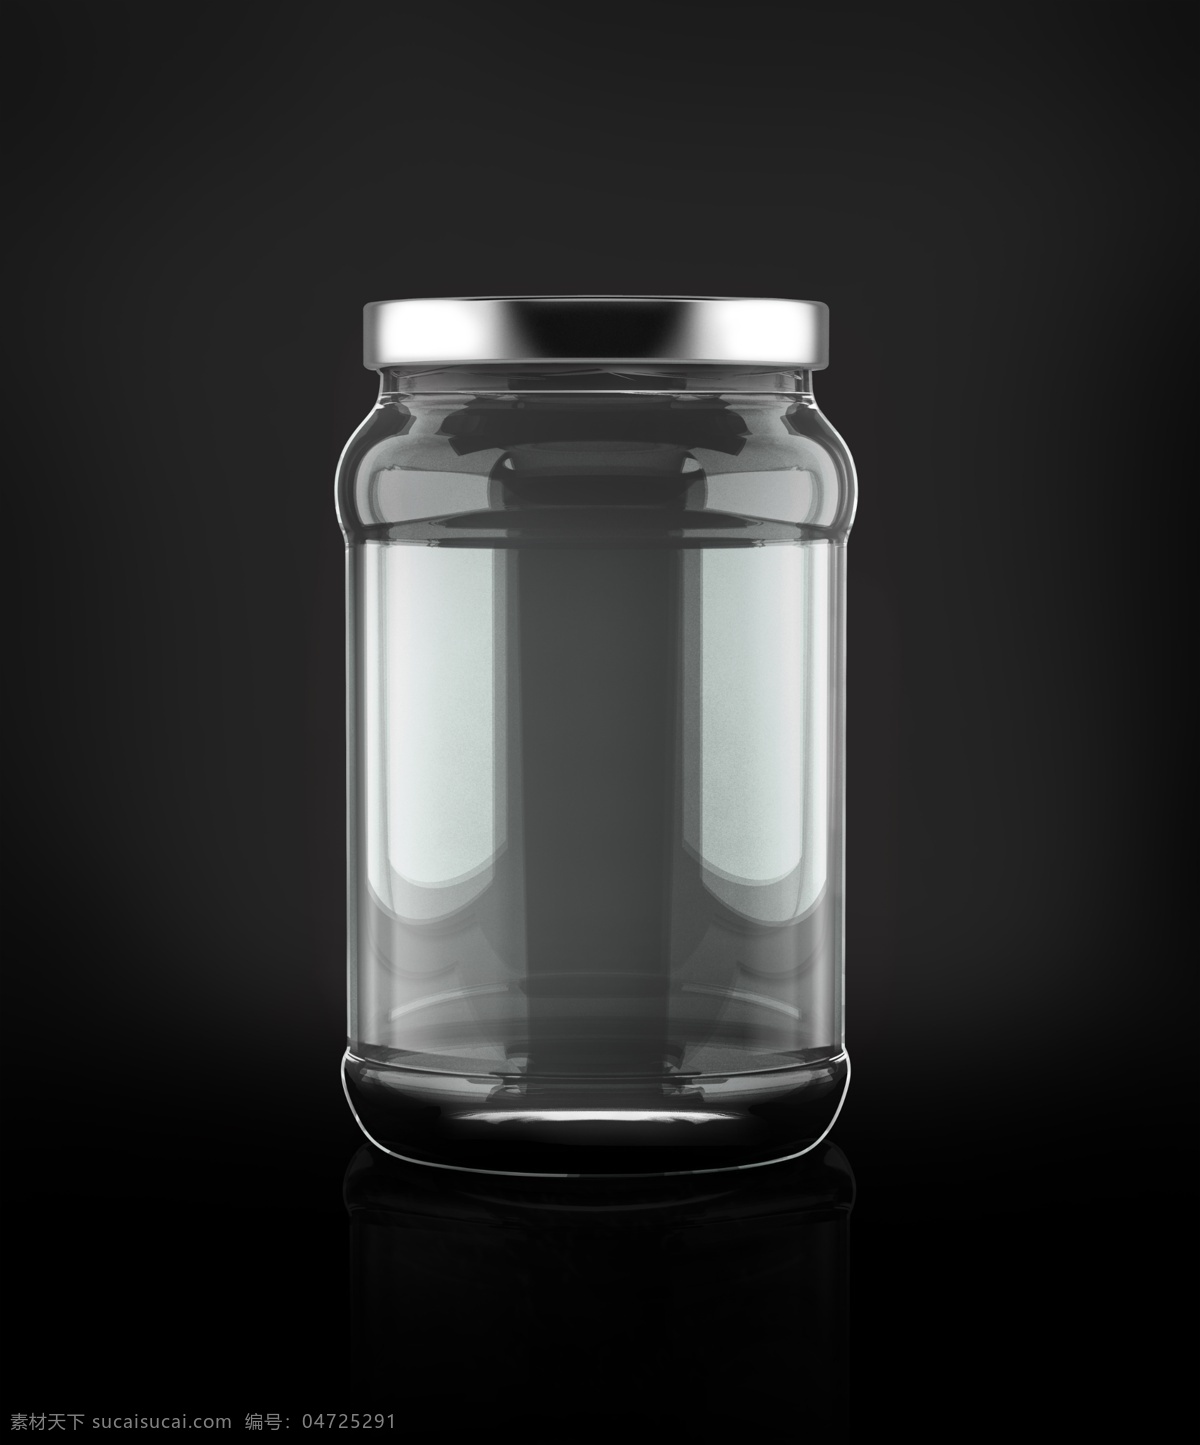 玻璃 瓶子 贴图 样机 玻璃瓶 瓶子样机 包装样机 瓶子贴图 包装贴图 玻璃瓶样机 分层